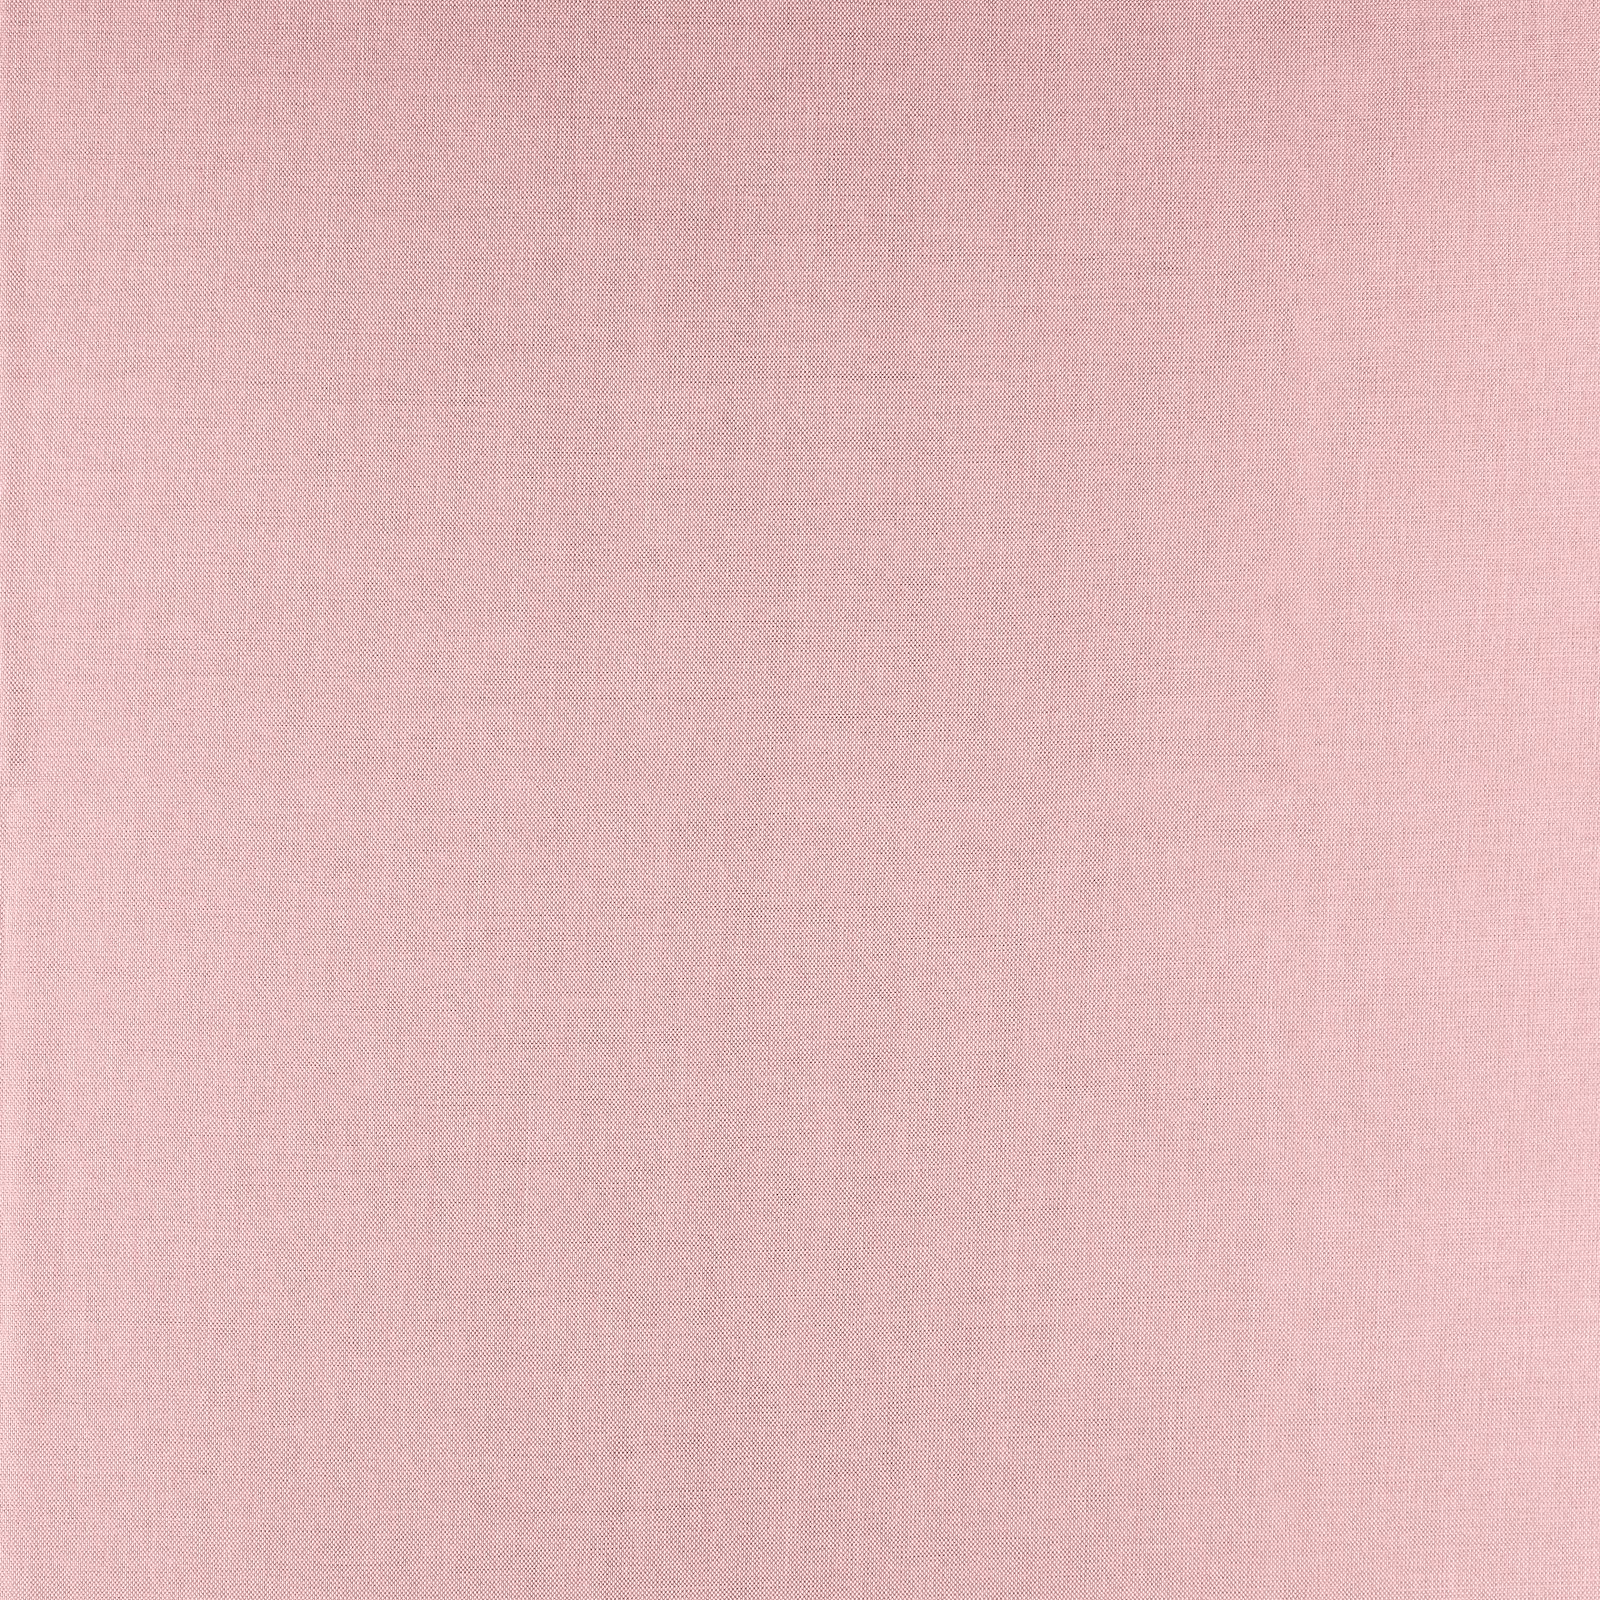 Møbelstruktur baby pink melange 826588_pack_solid